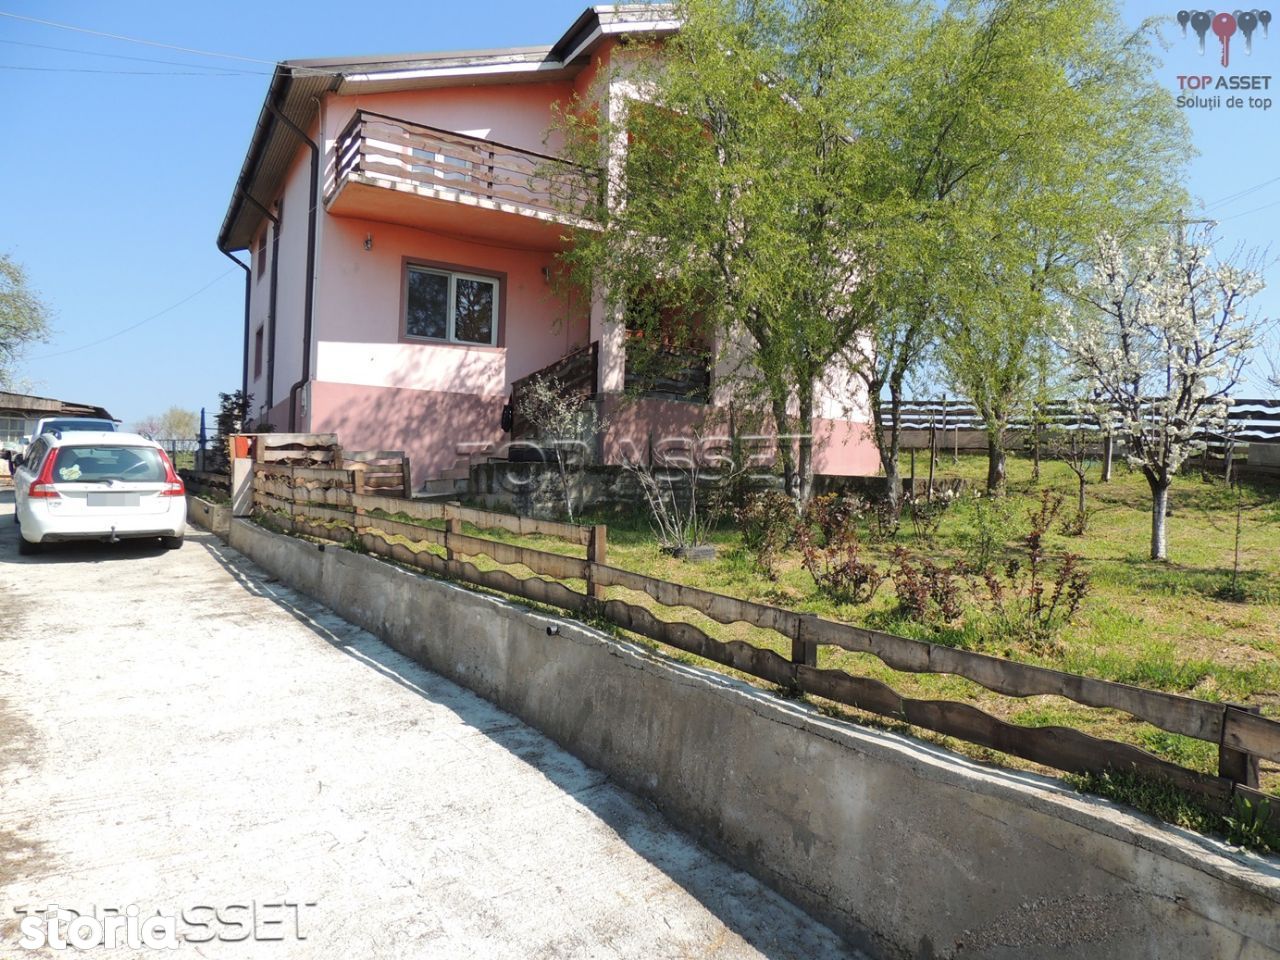 Casa in sat Crevedia Mare, 30 min de Bucuresti pe Autostrada